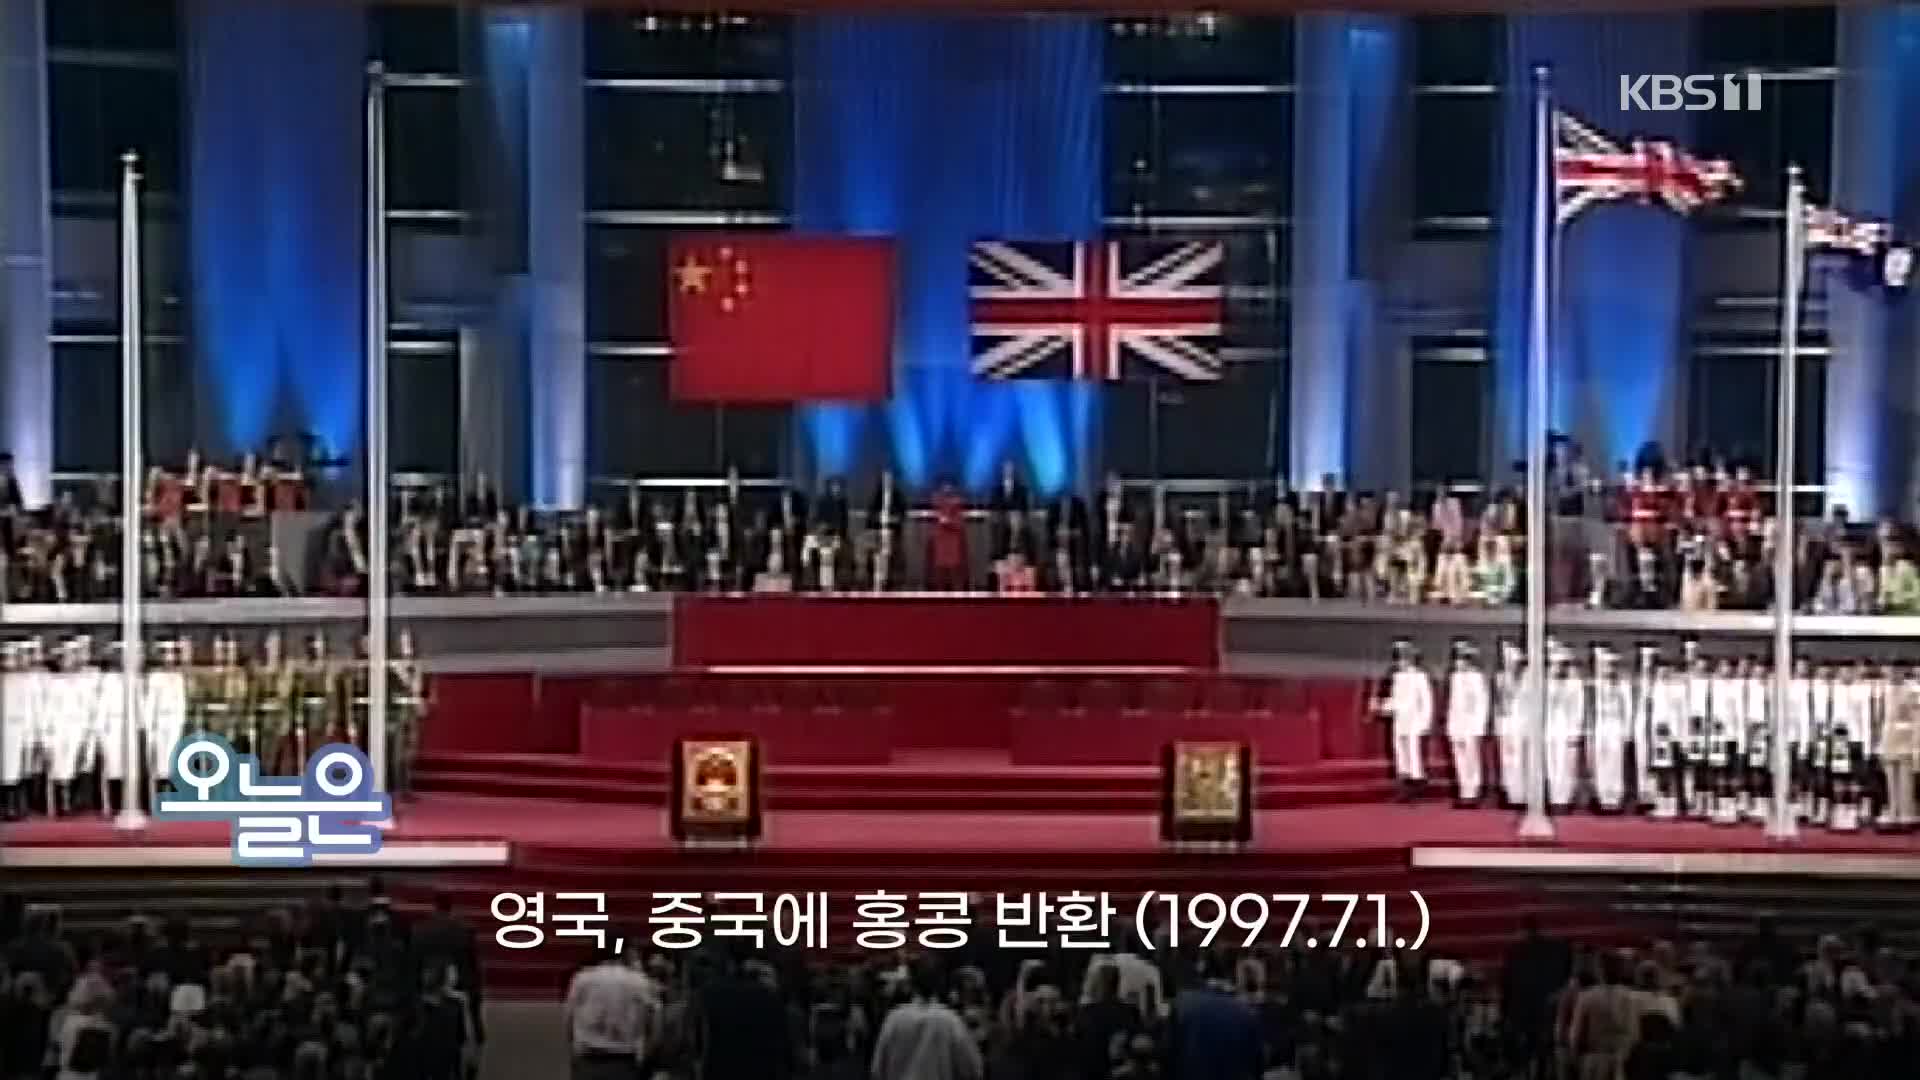 [오늘은] 영국, 중국에 홍콩 반환 (1997.7.1.)